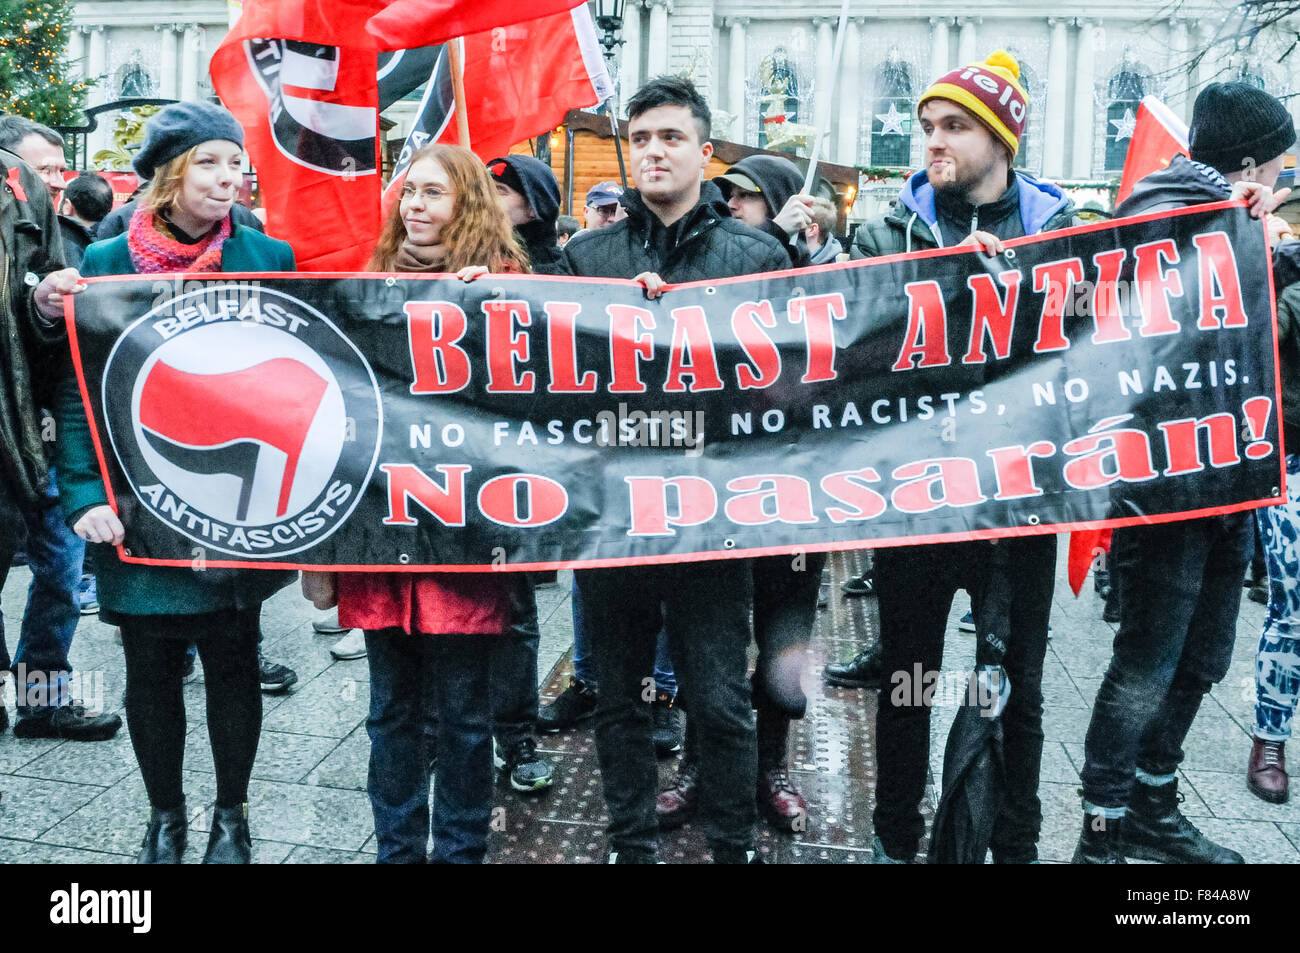 Belfast, Irlande du Nord. 05 Dec 2015 - Pro-réfugiés partisans de 'Belfast Antifa' se rassemblent pour protester contre la coalition protestante anti-réfugiés du rallye, avec le message "Pas de fascistes. Pas de racistes. Pas de nazis". Alors qu'ils protestaient contre un petit groupe de néo-nazis appreared et a fait un salut nazi. Crédit : Stephen Barnes/Alamy Live News Banque D'Images